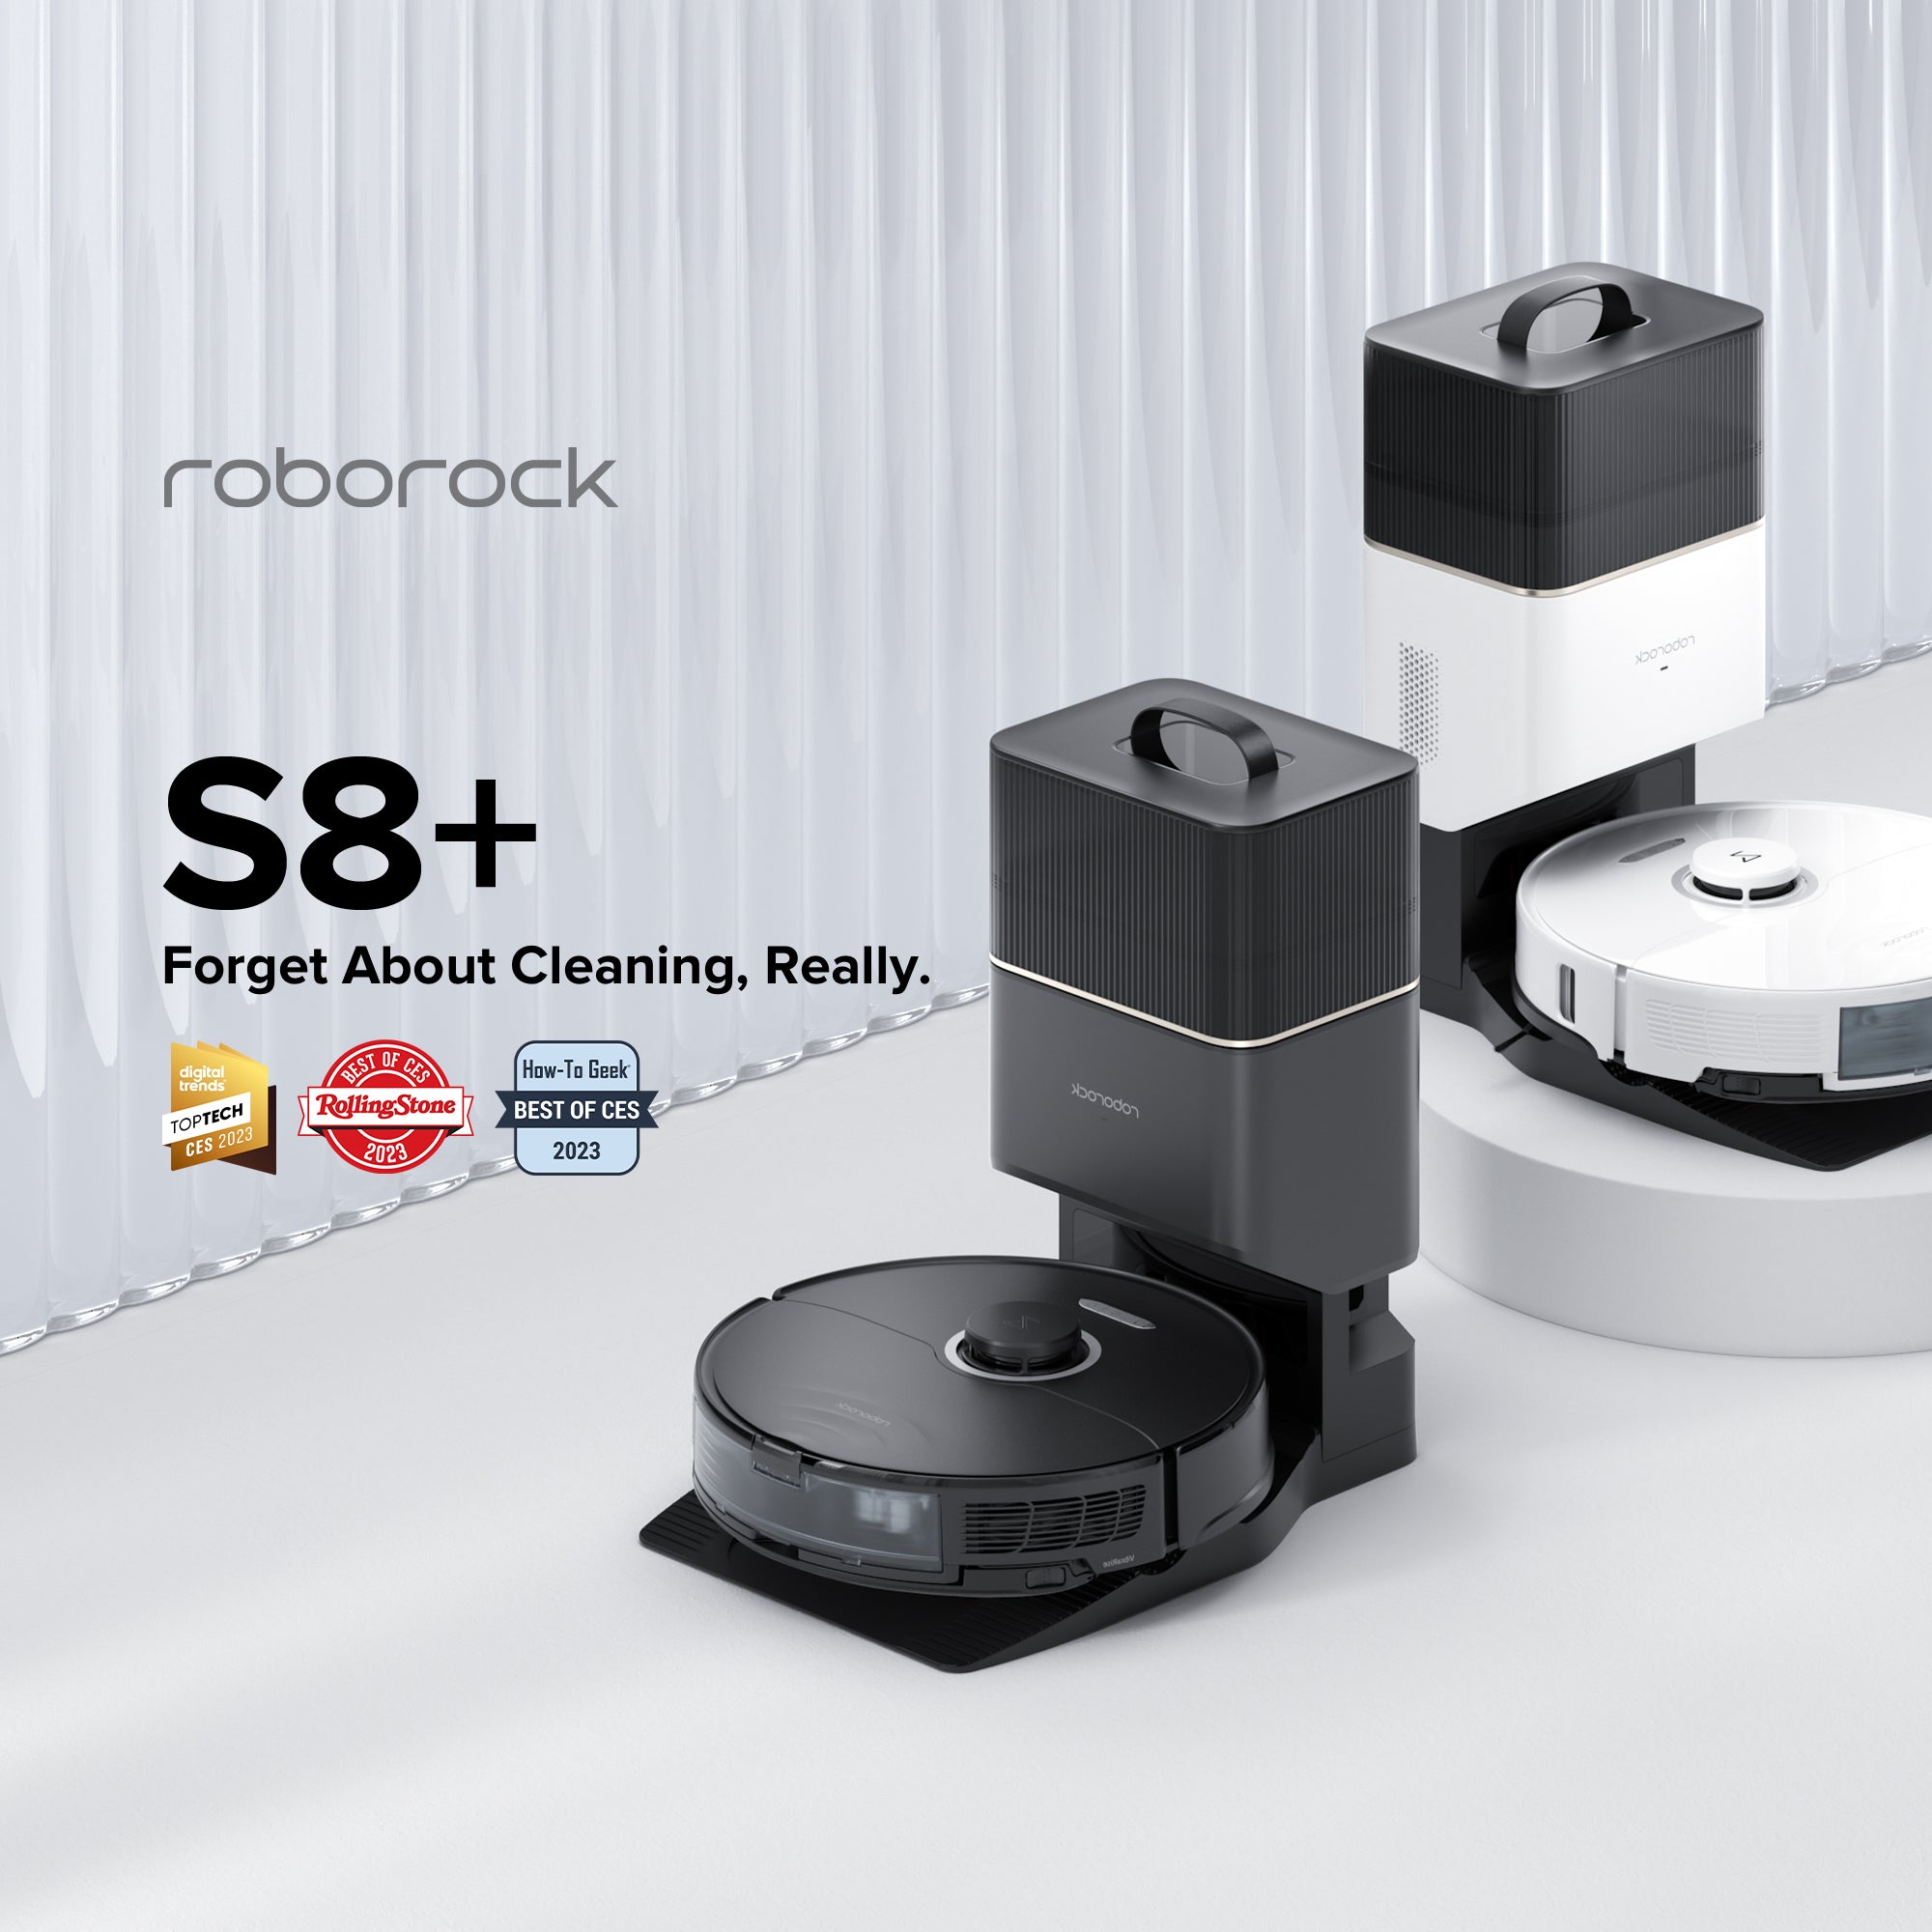 Roborock S8+ Robot Vacuum with Auto-Empty Dock